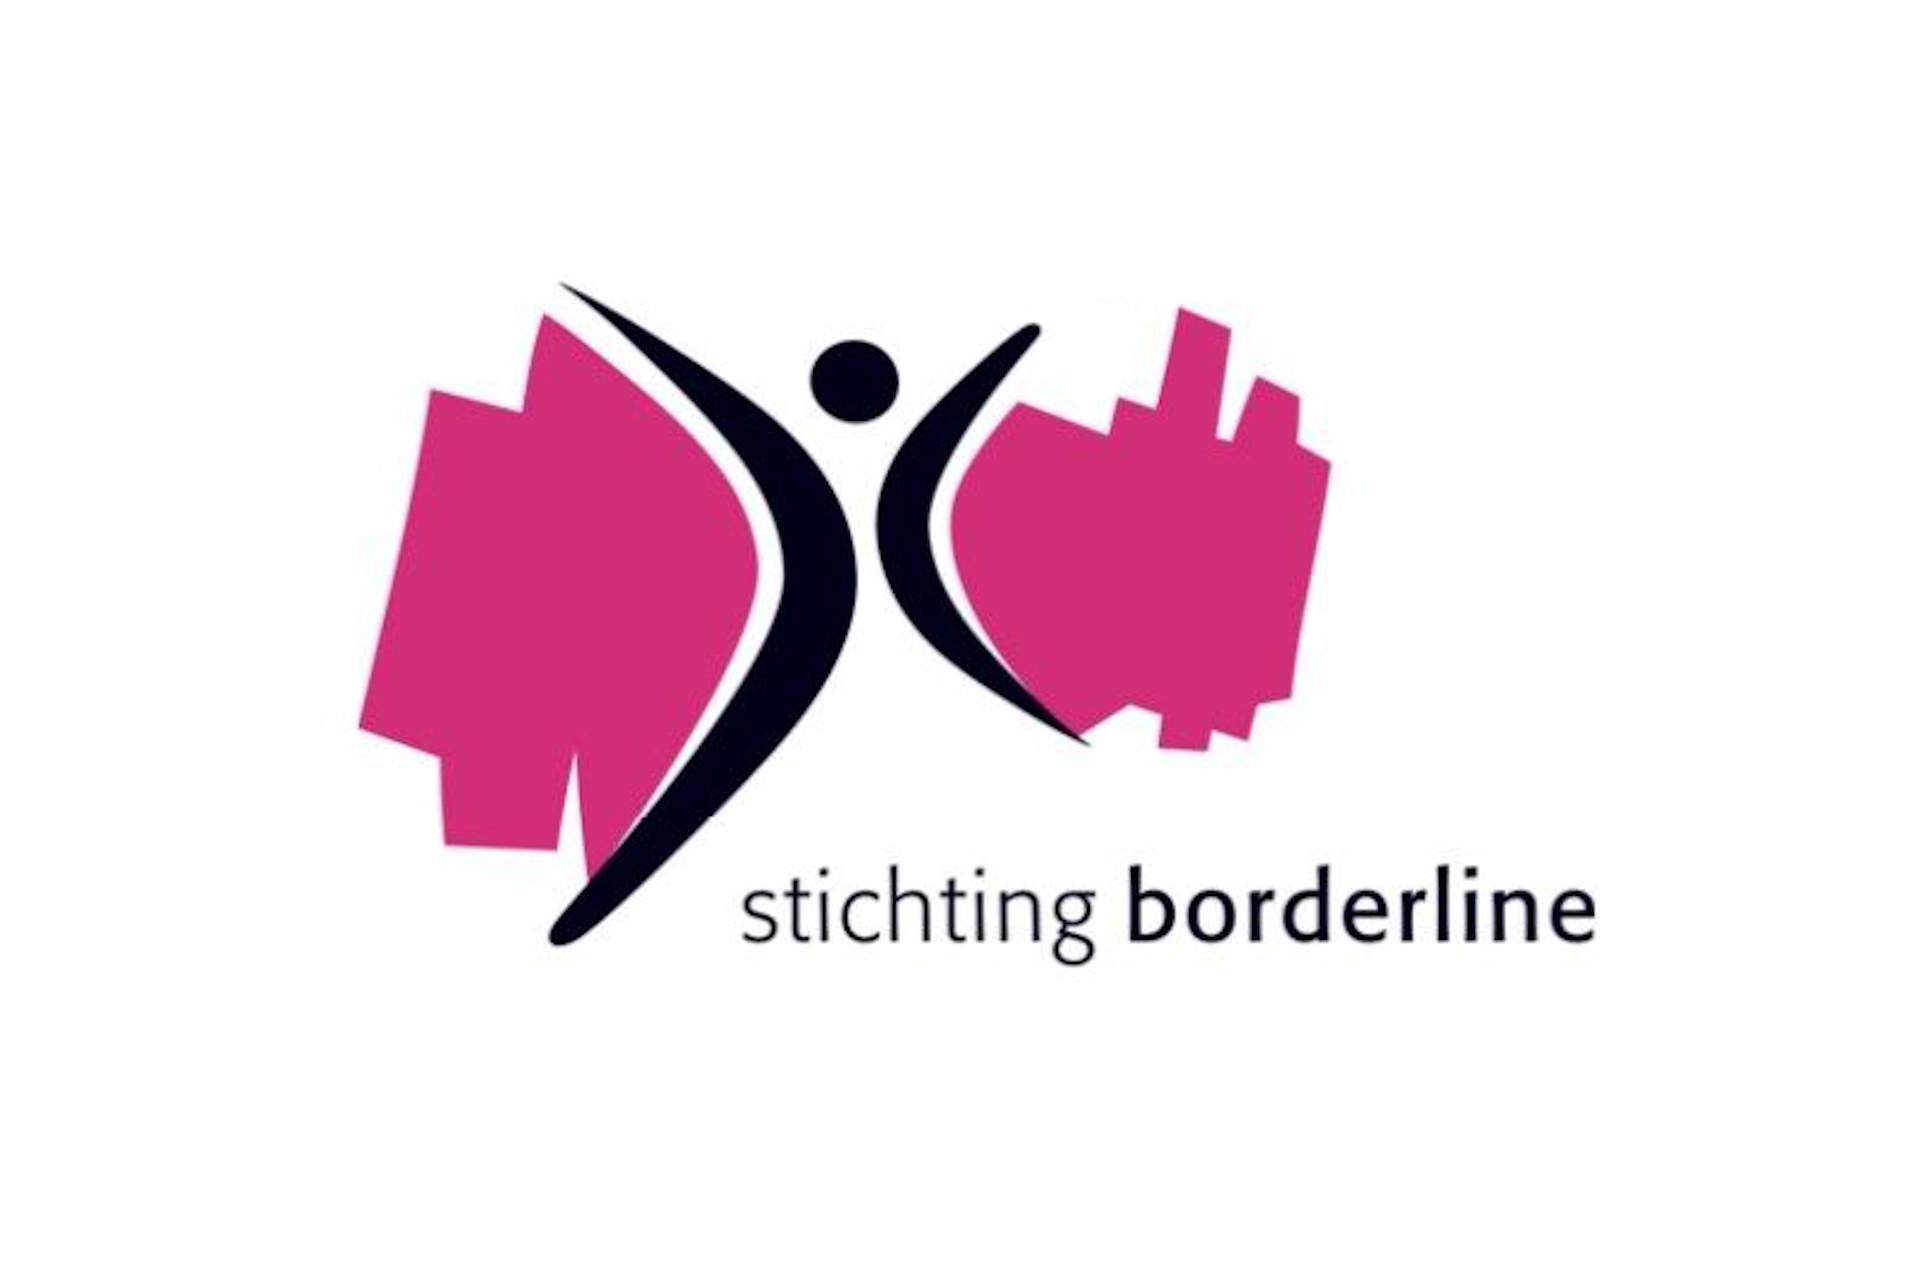 Stichting Borderline